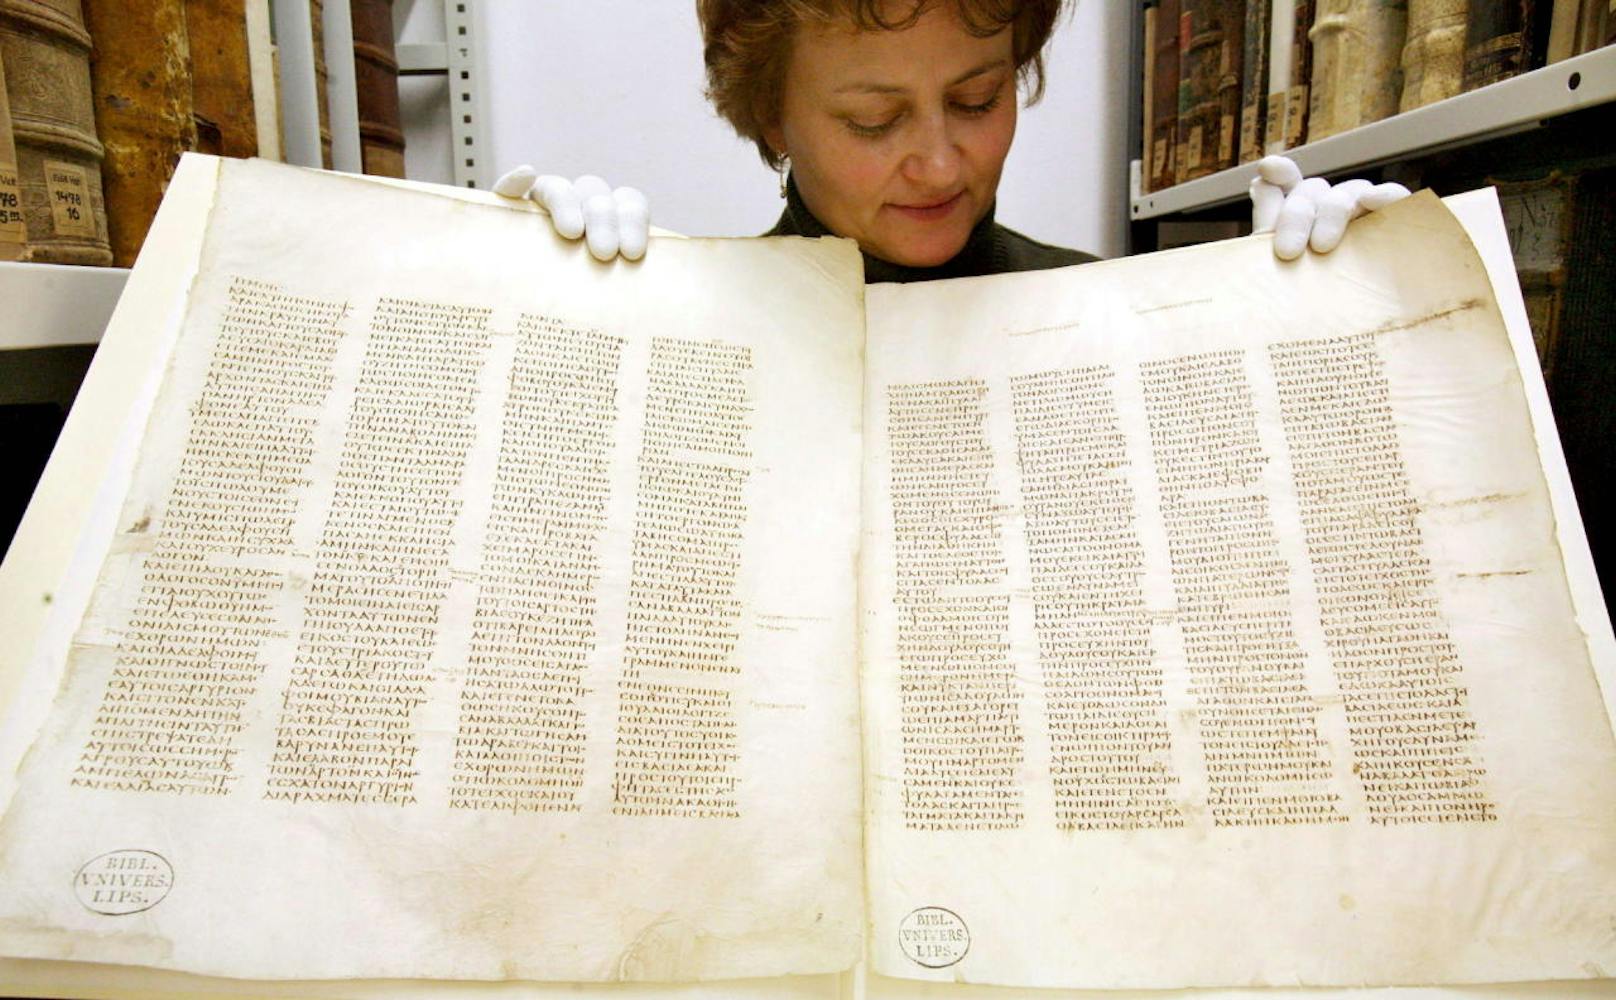 1844 wurde in der umfassenden Sammlung des Klosters der "Codex Sinaiticus" entdeckt. Die fast vollständig erhaltene Bibelhandschrift stammt aus dem 4. Jahrhundert und ist somit eine der ältesten Version der heiligen Texte.